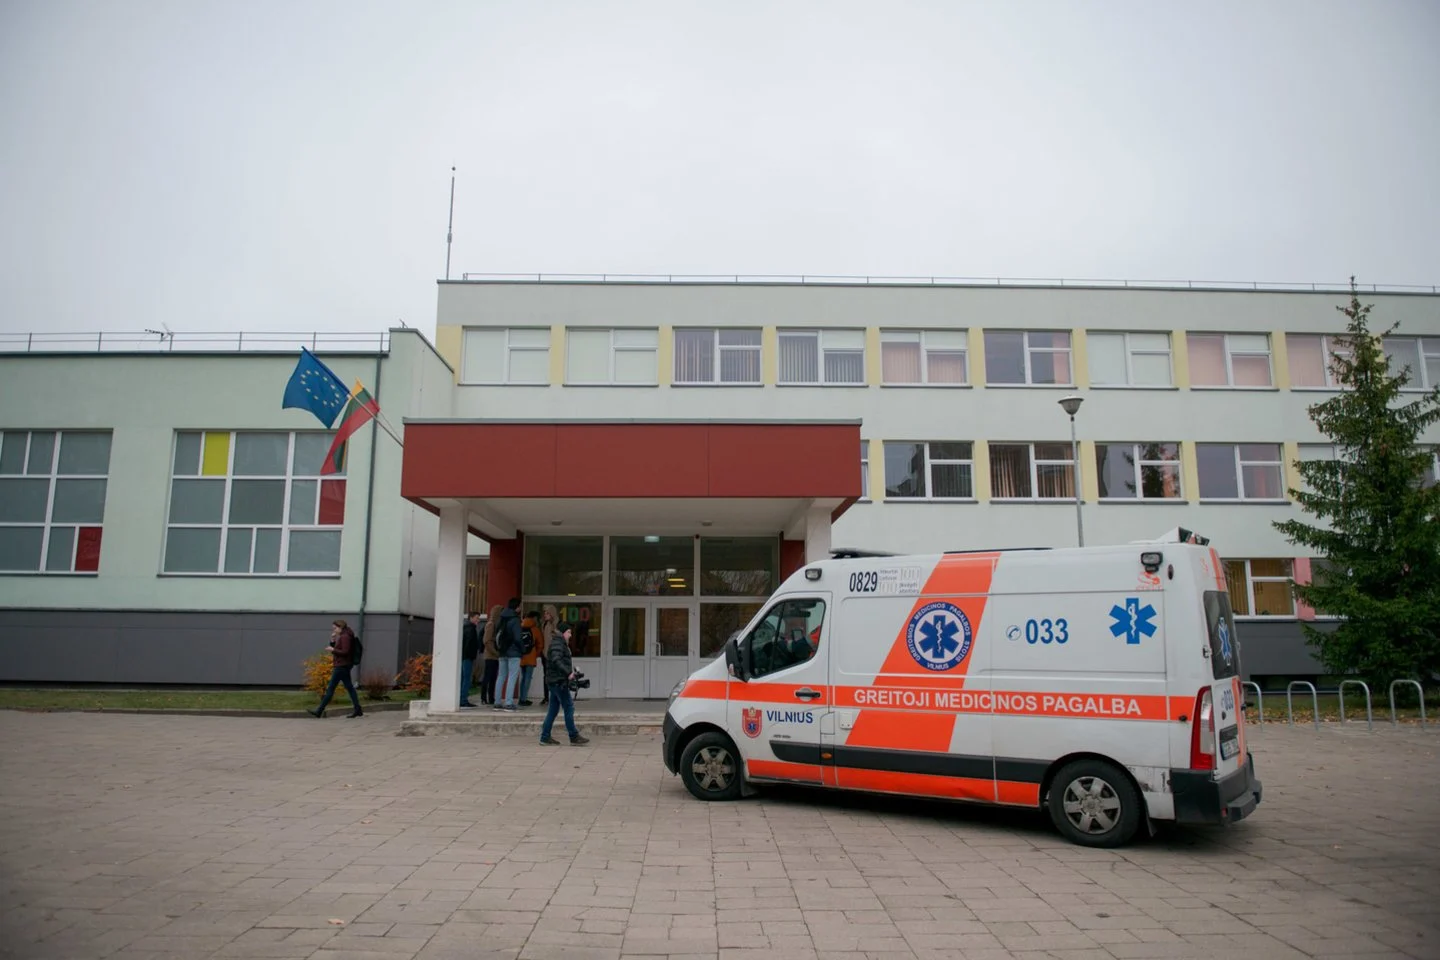 Vilniaus gimnazijoje – baisi bendraklasių egzekucija 12-mečiui